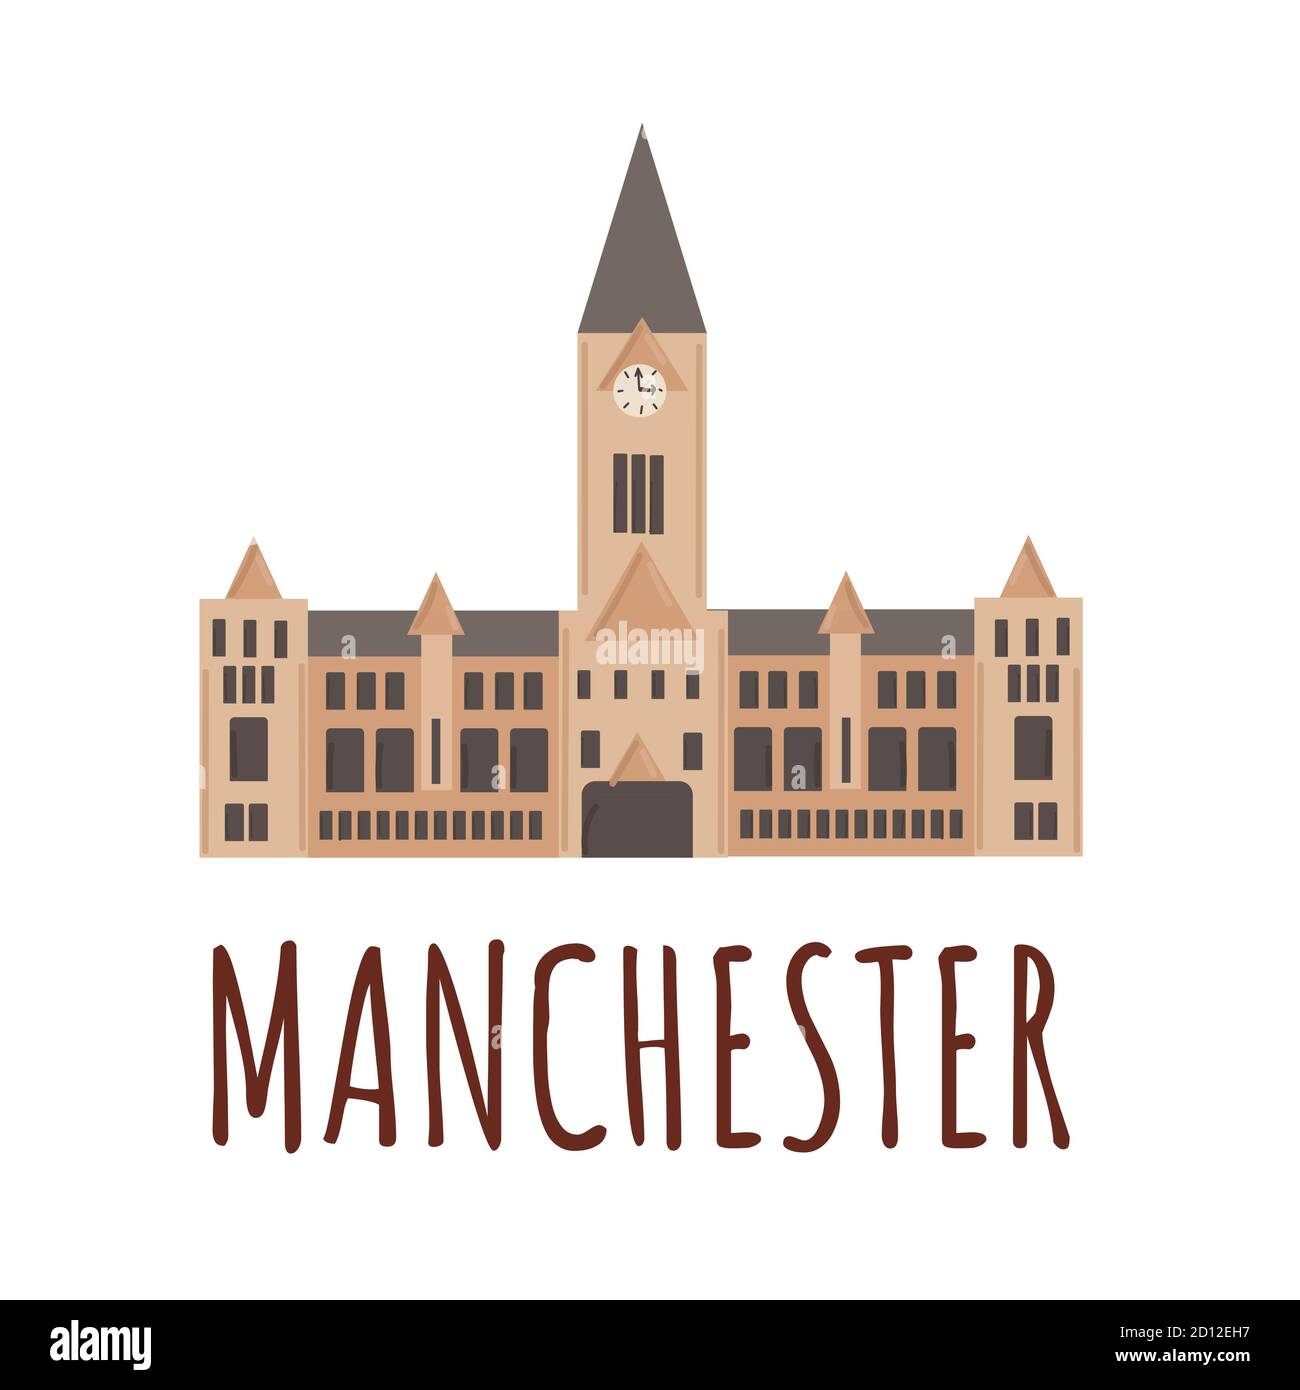 Rathaus von Manchester. Vektor-Illustration der berühmten britischen Stadt, flachen Stil. Das Wahrzeichen von Großbritannien Stock Vektor